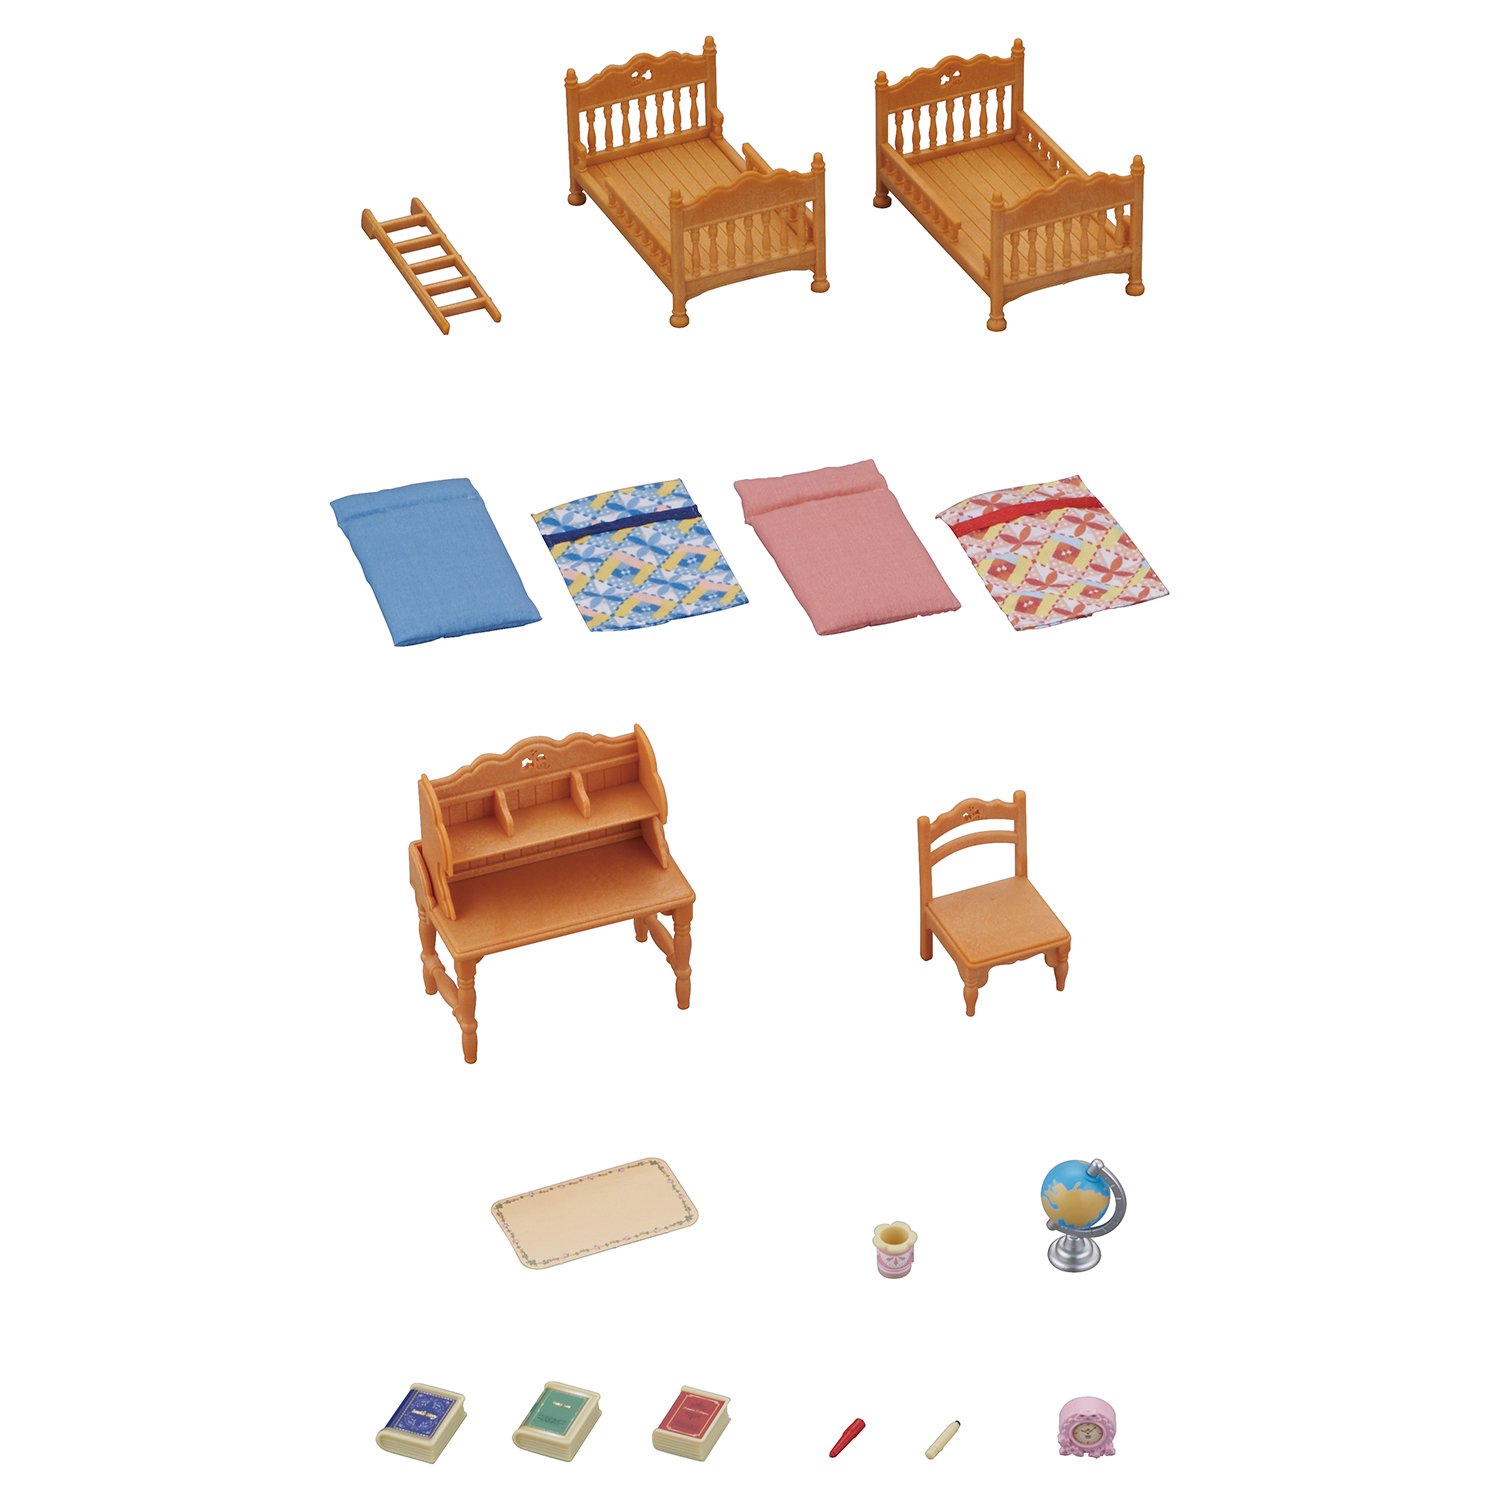 Игровой набор из серии Sylvanian Families - Детская комната с двухэтажной кроватью  